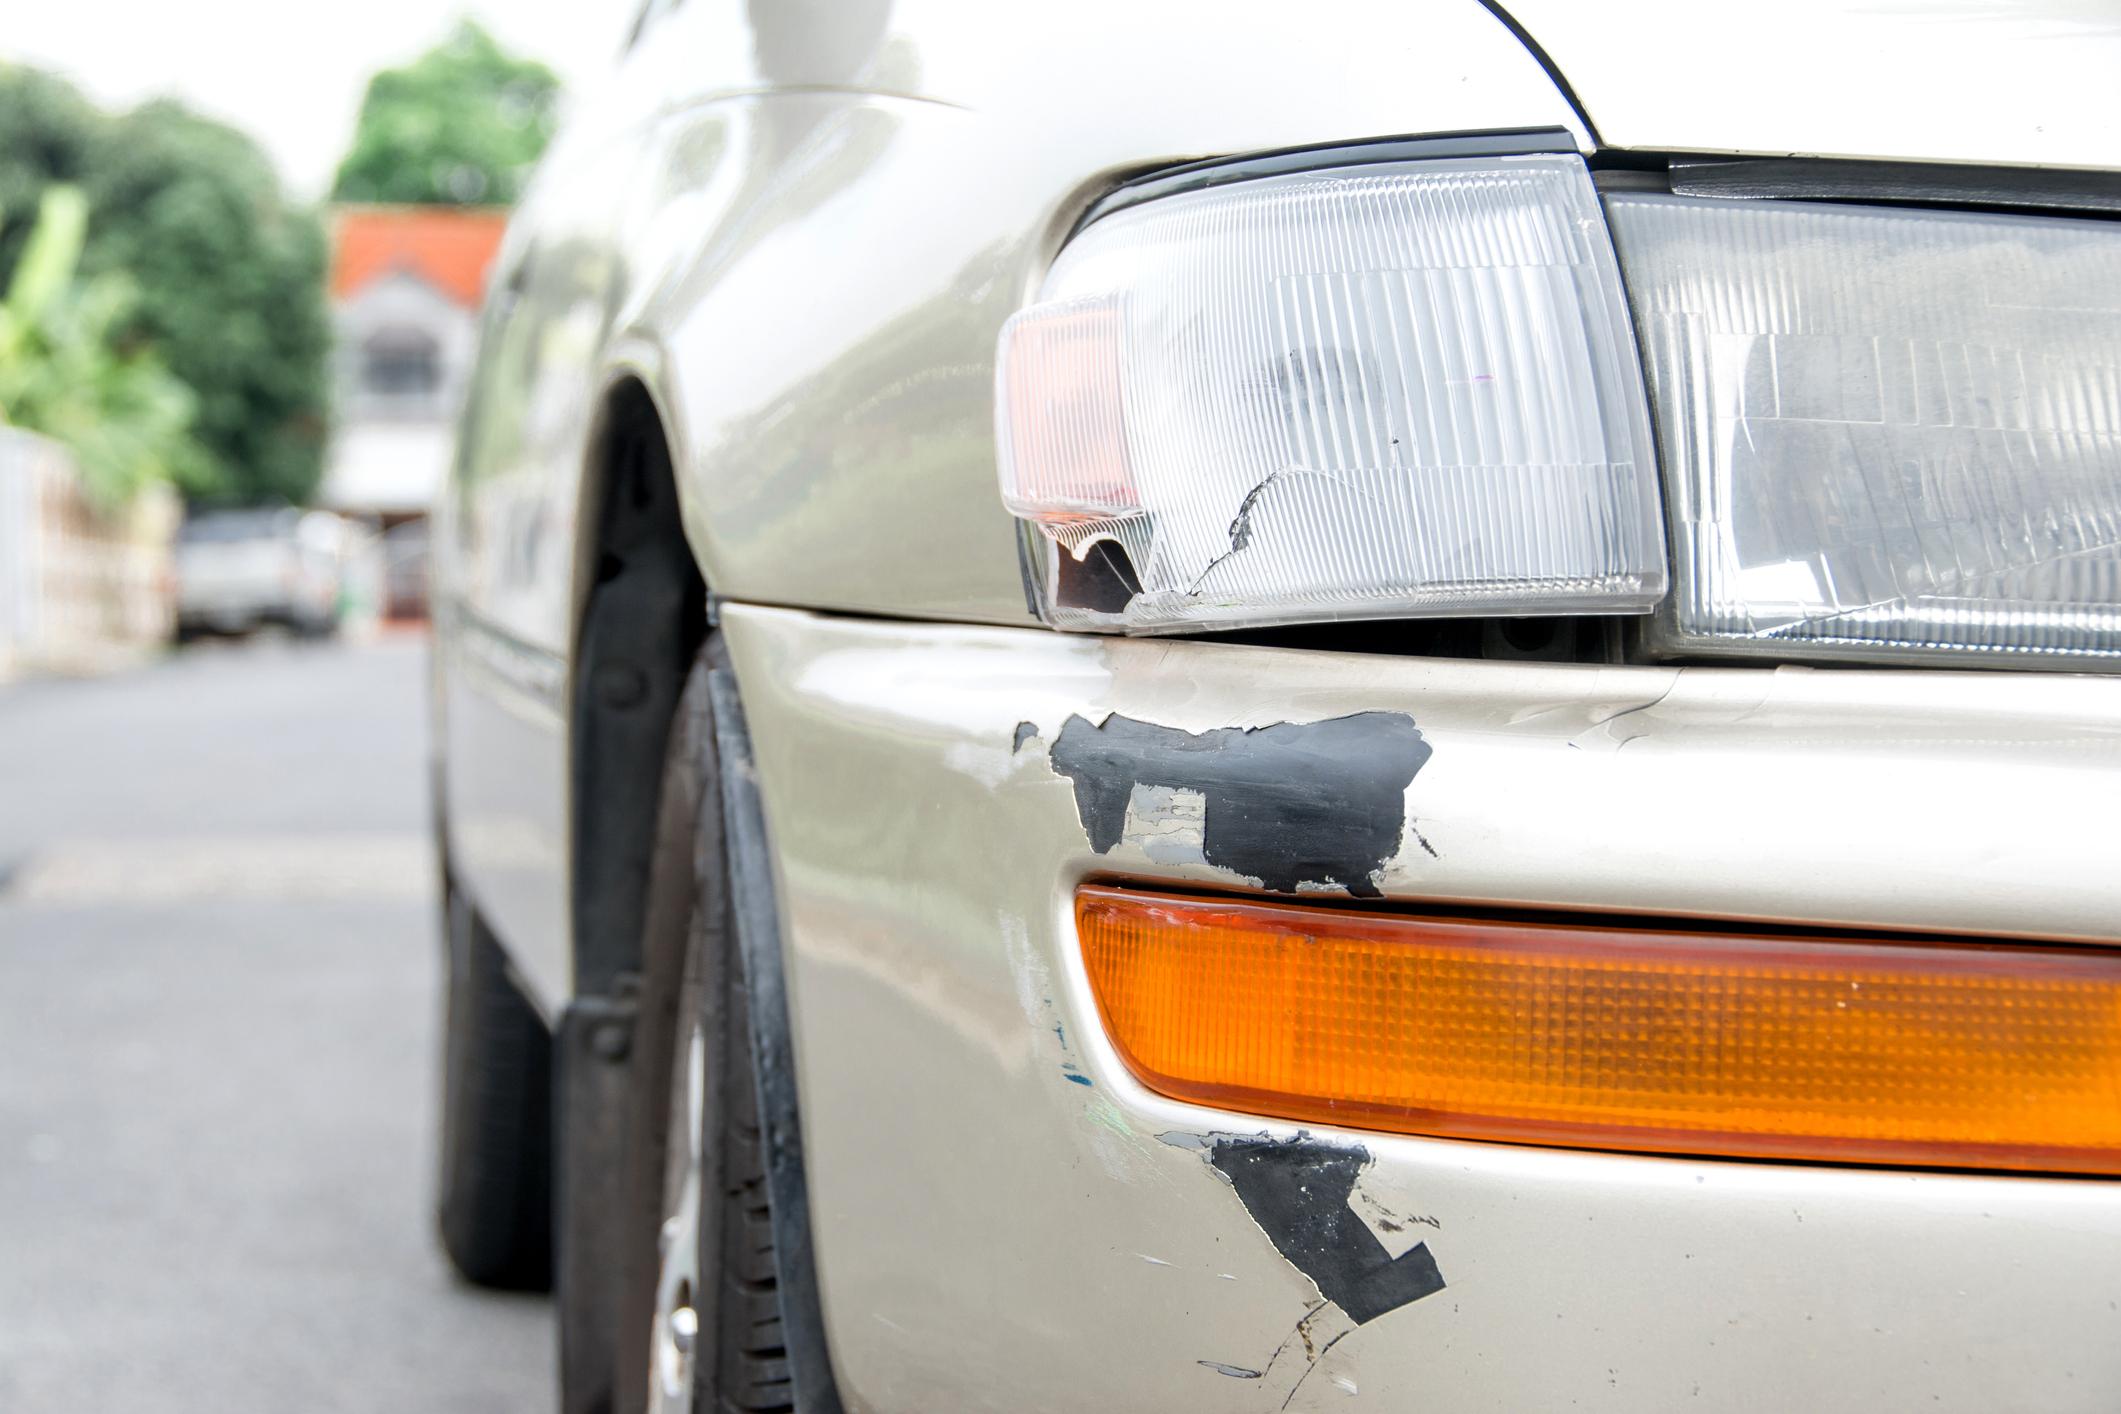 Quelle assurance paie quels dégâts sur un véhicule ? 